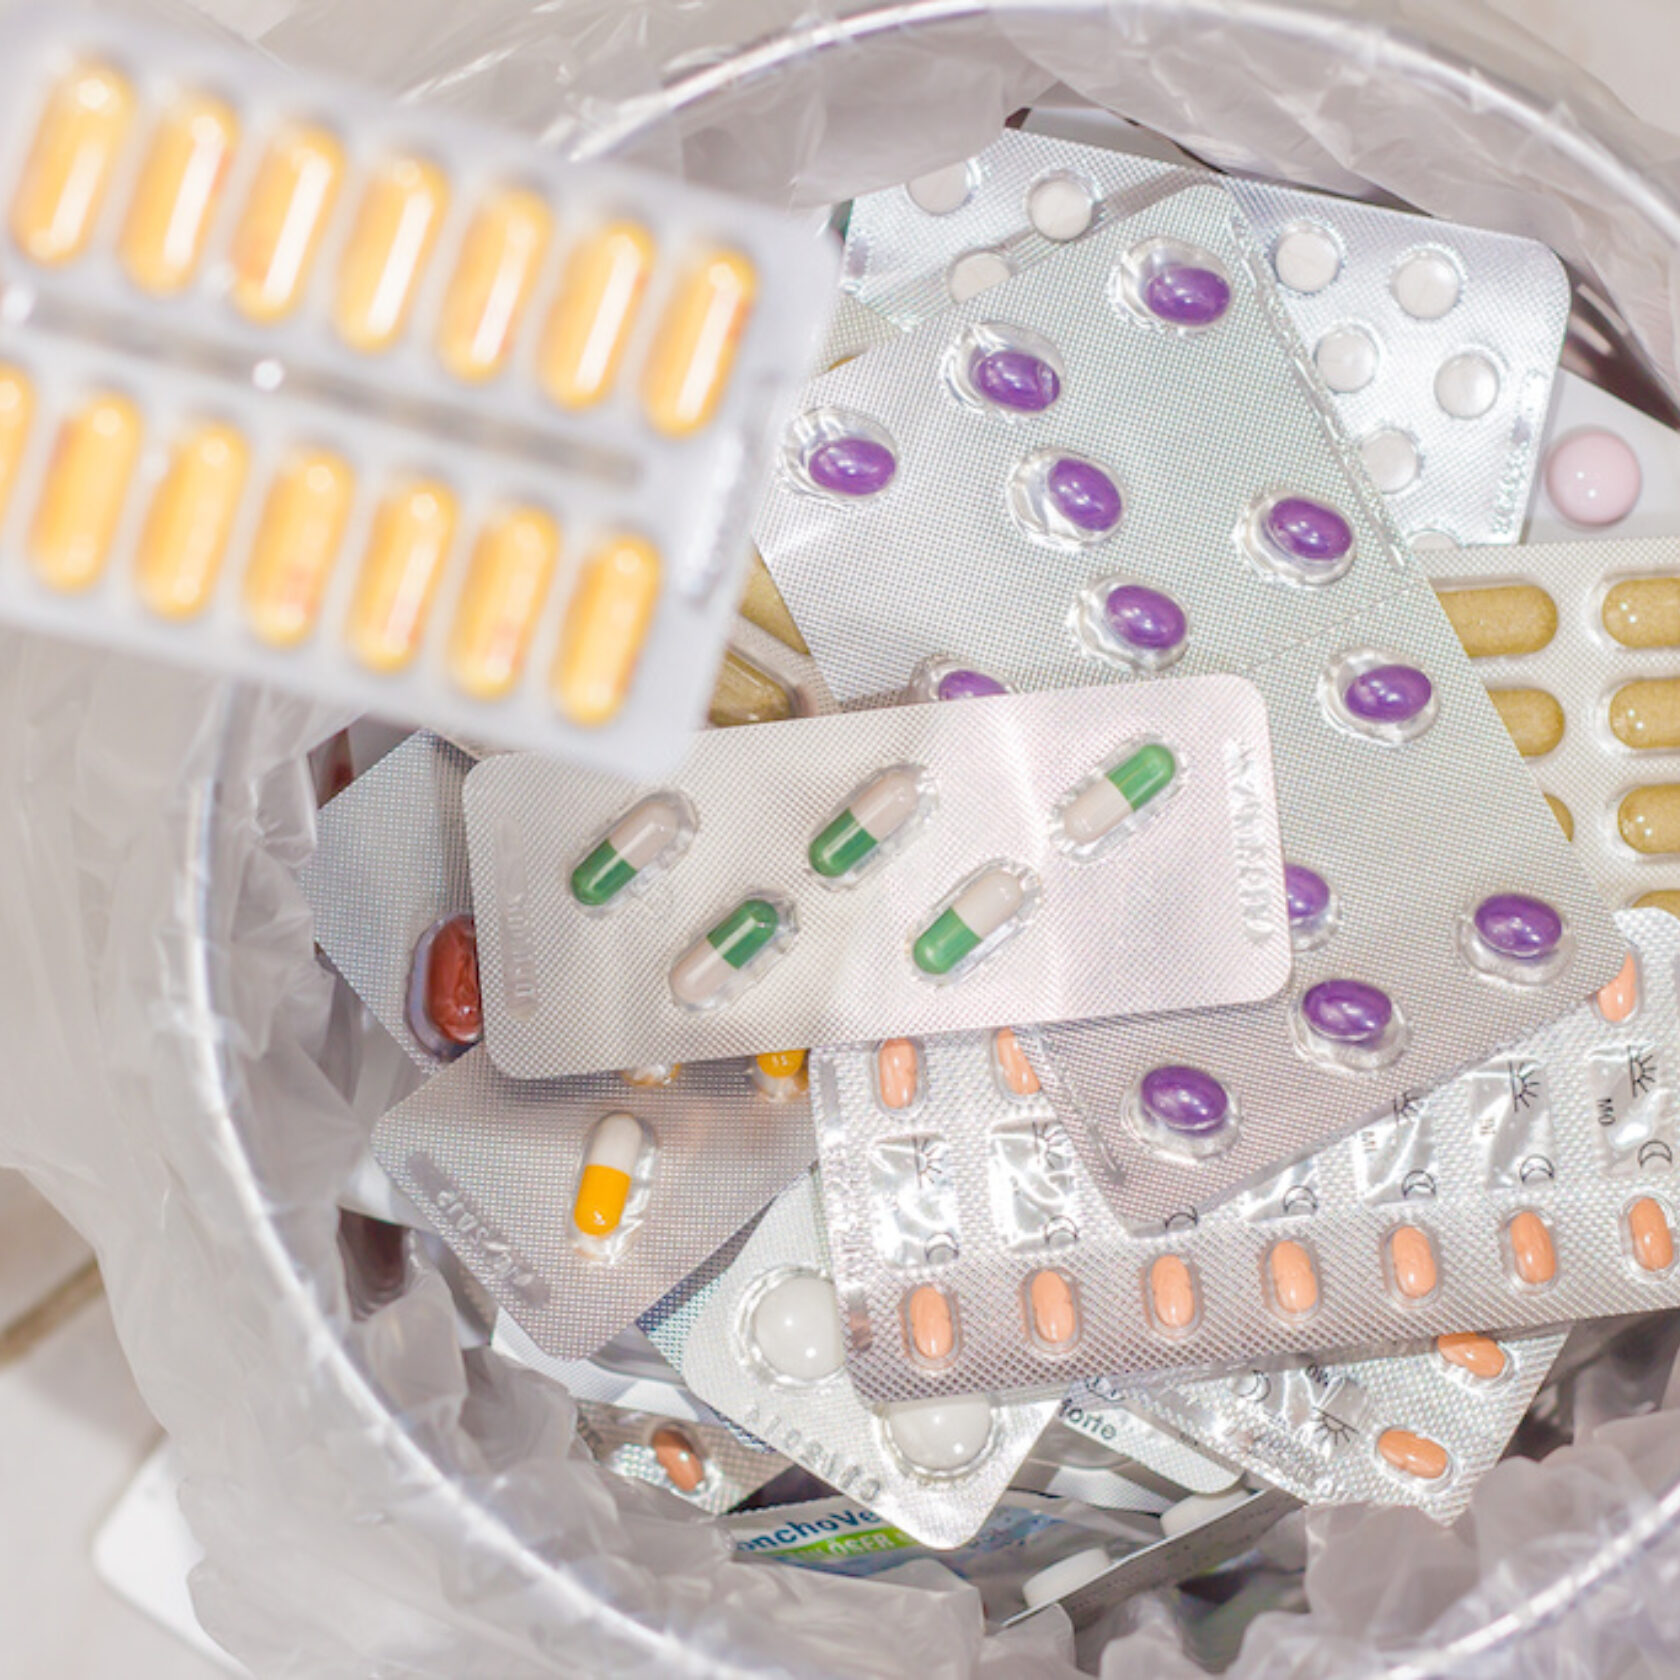 Verschiedene Blisterverpackungen mit Medikamenten im Abfall